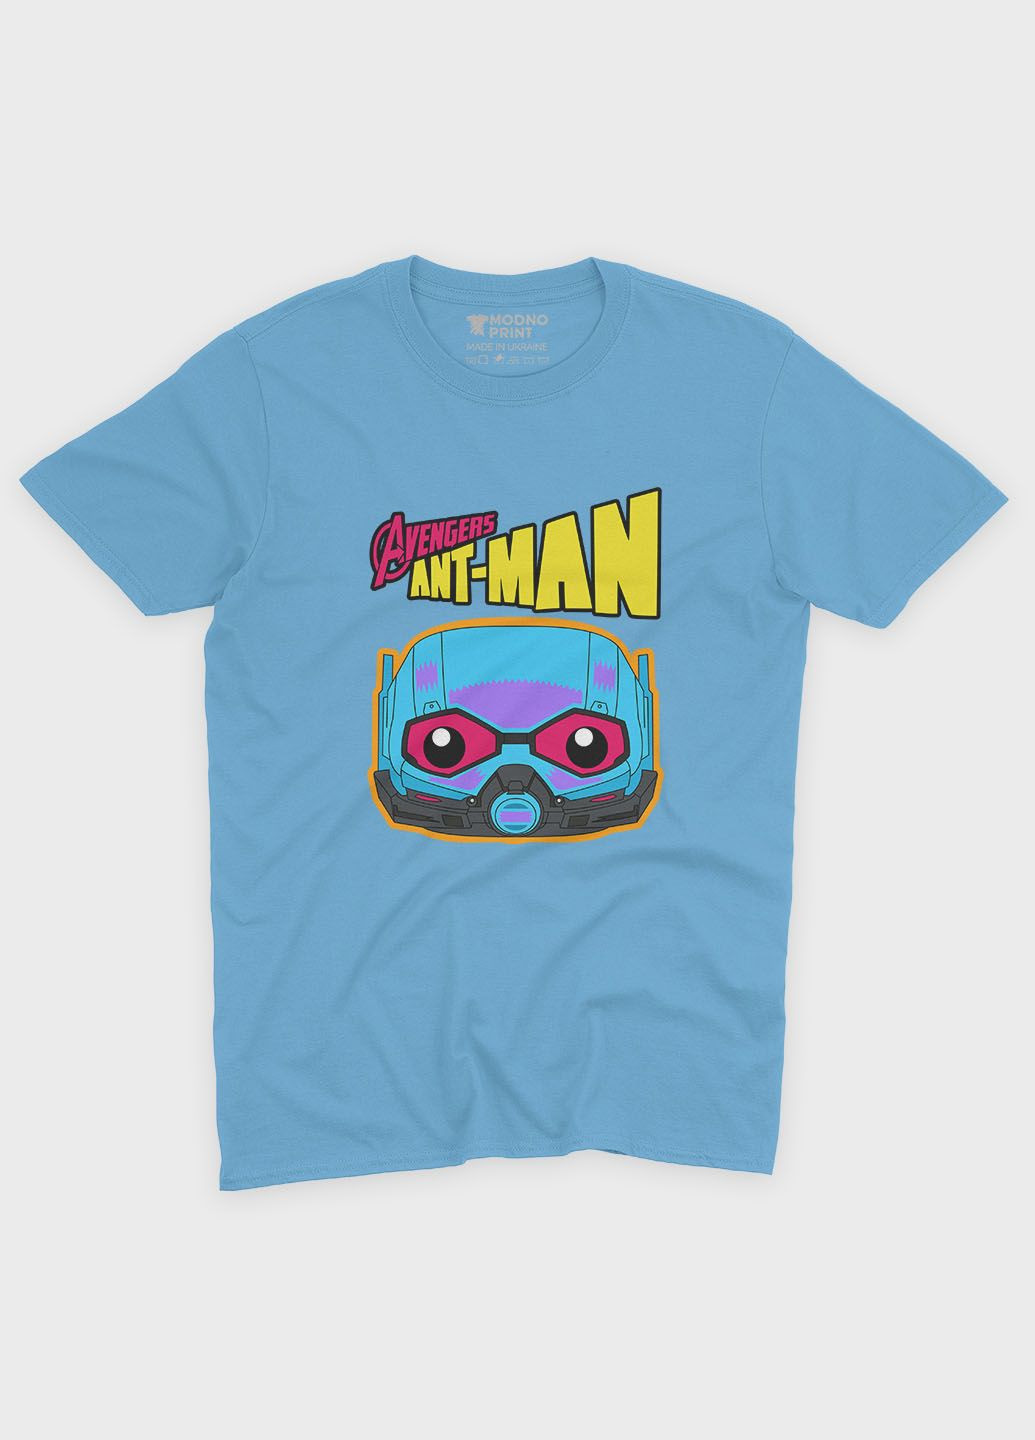 Голубая демисезонная футболка для девочки с принтом супергероя - человек муравей (ts001-1-lbl-006-026-003-g) Modno